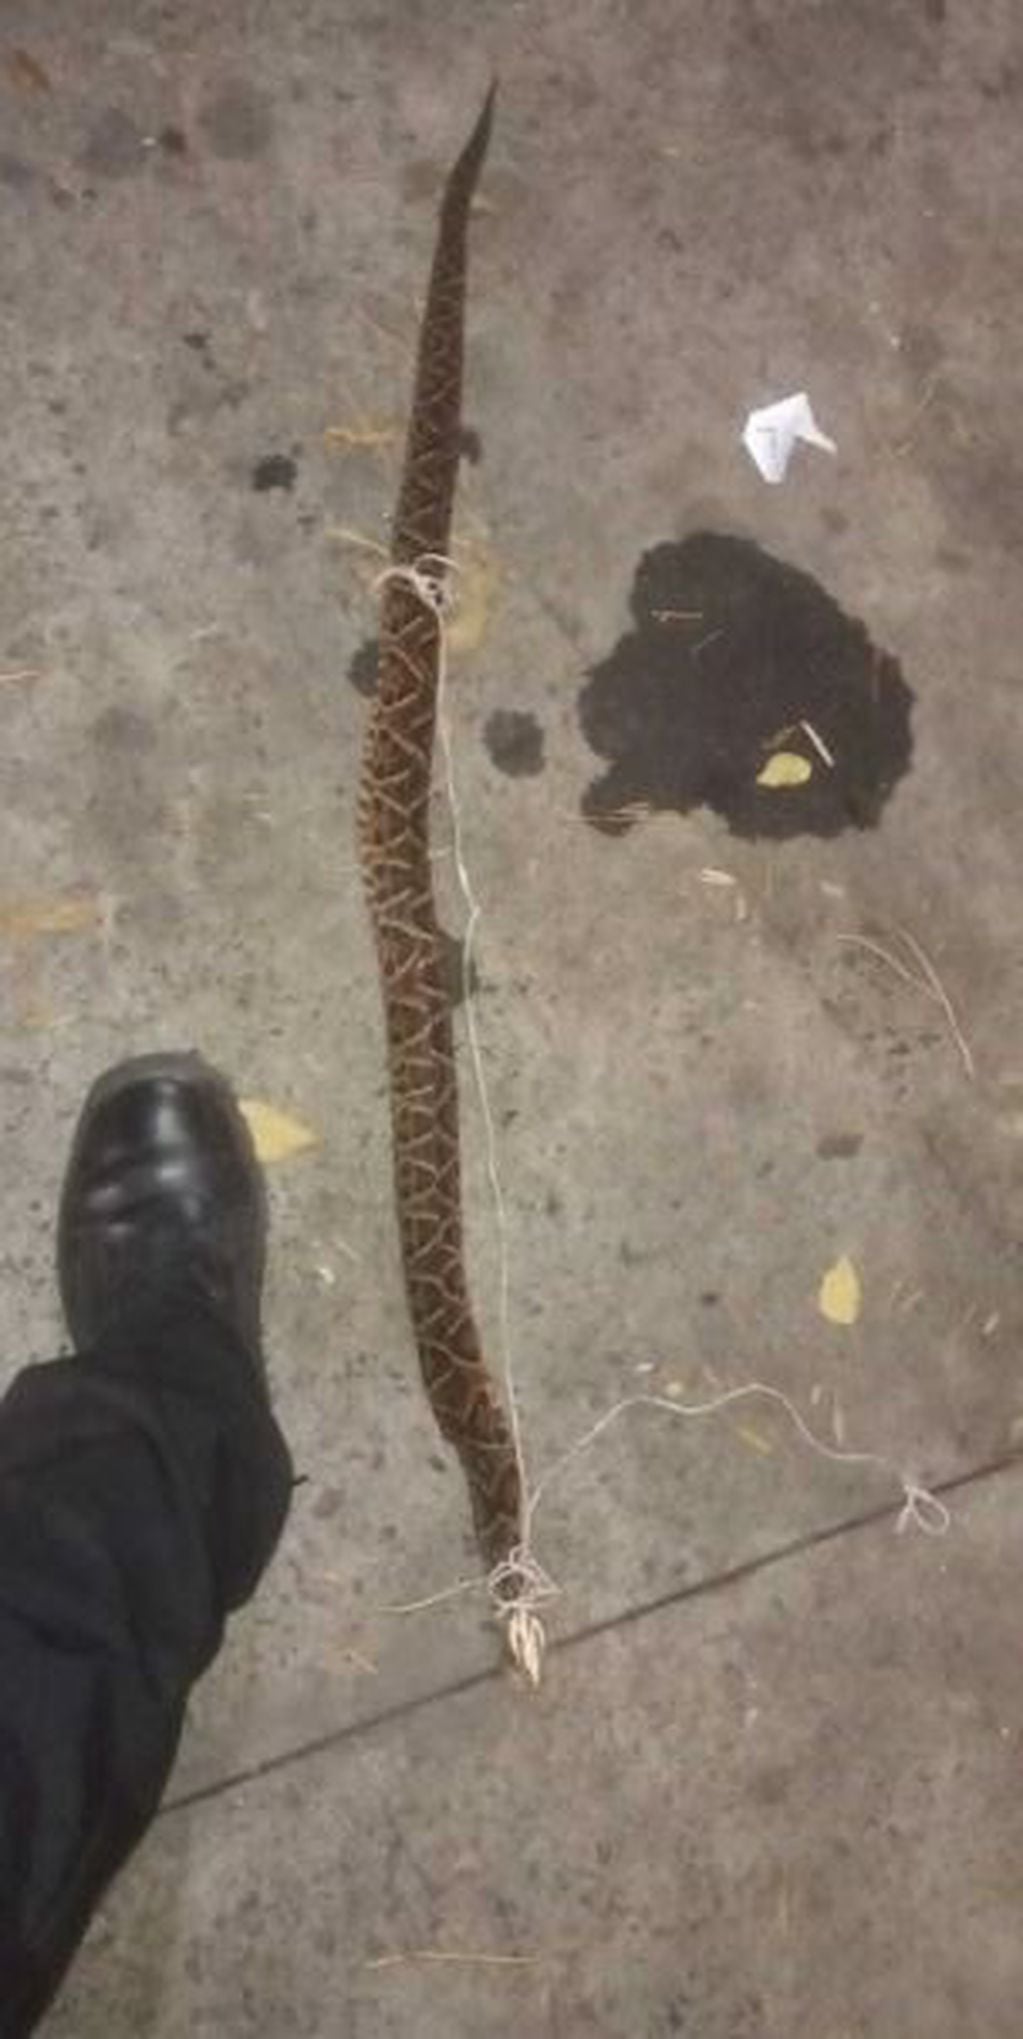 La serpiente, según el parte original, tenía alrededor de un metro de largo.